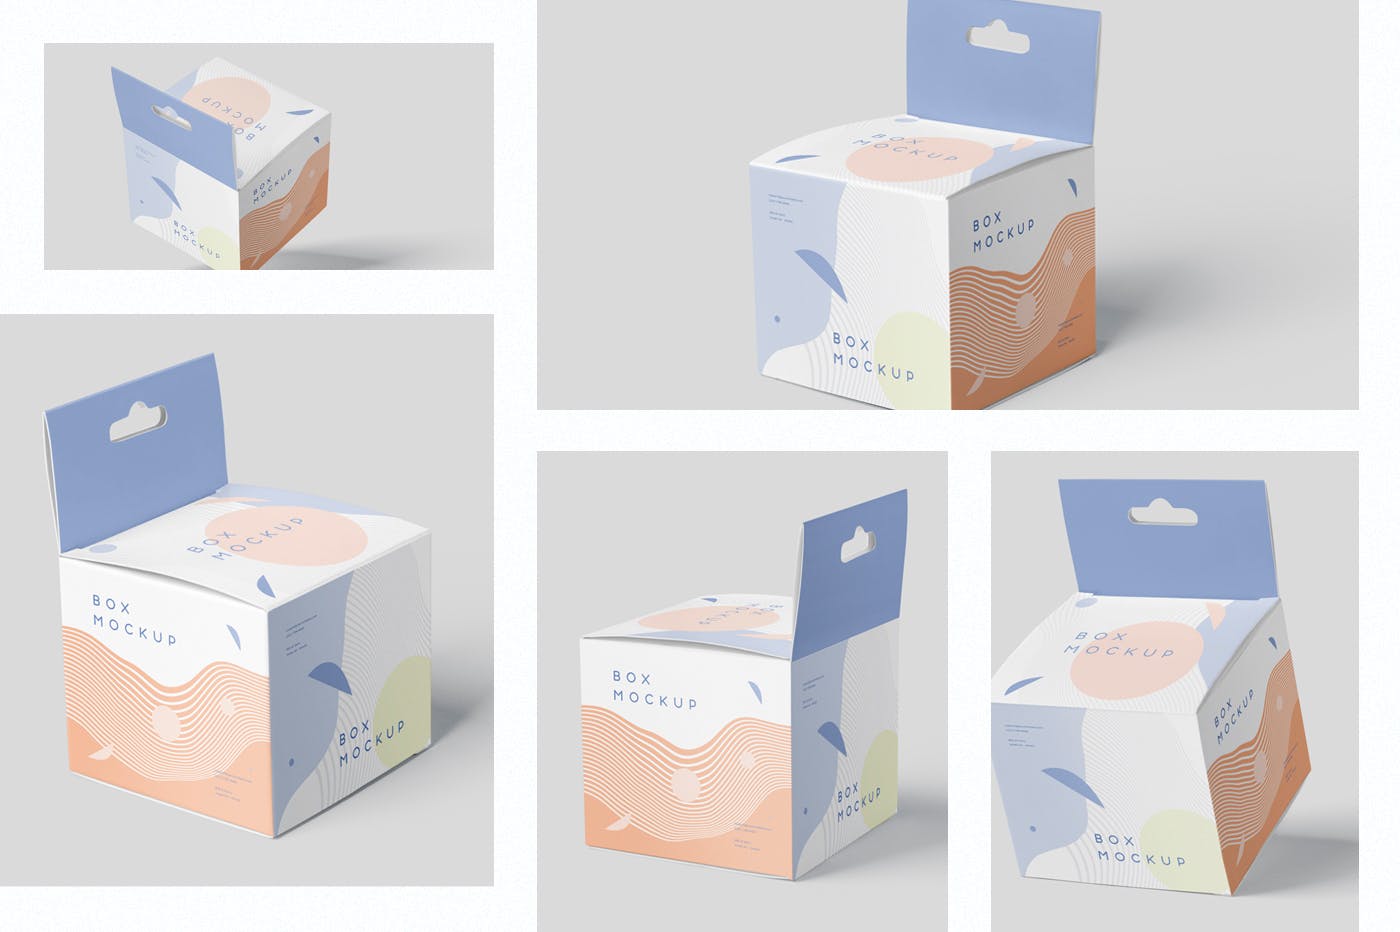 挂耳式迷你方形包装盒第一素材精选模板 Box Mockup Set – Mini Square with Hanger插图(1)